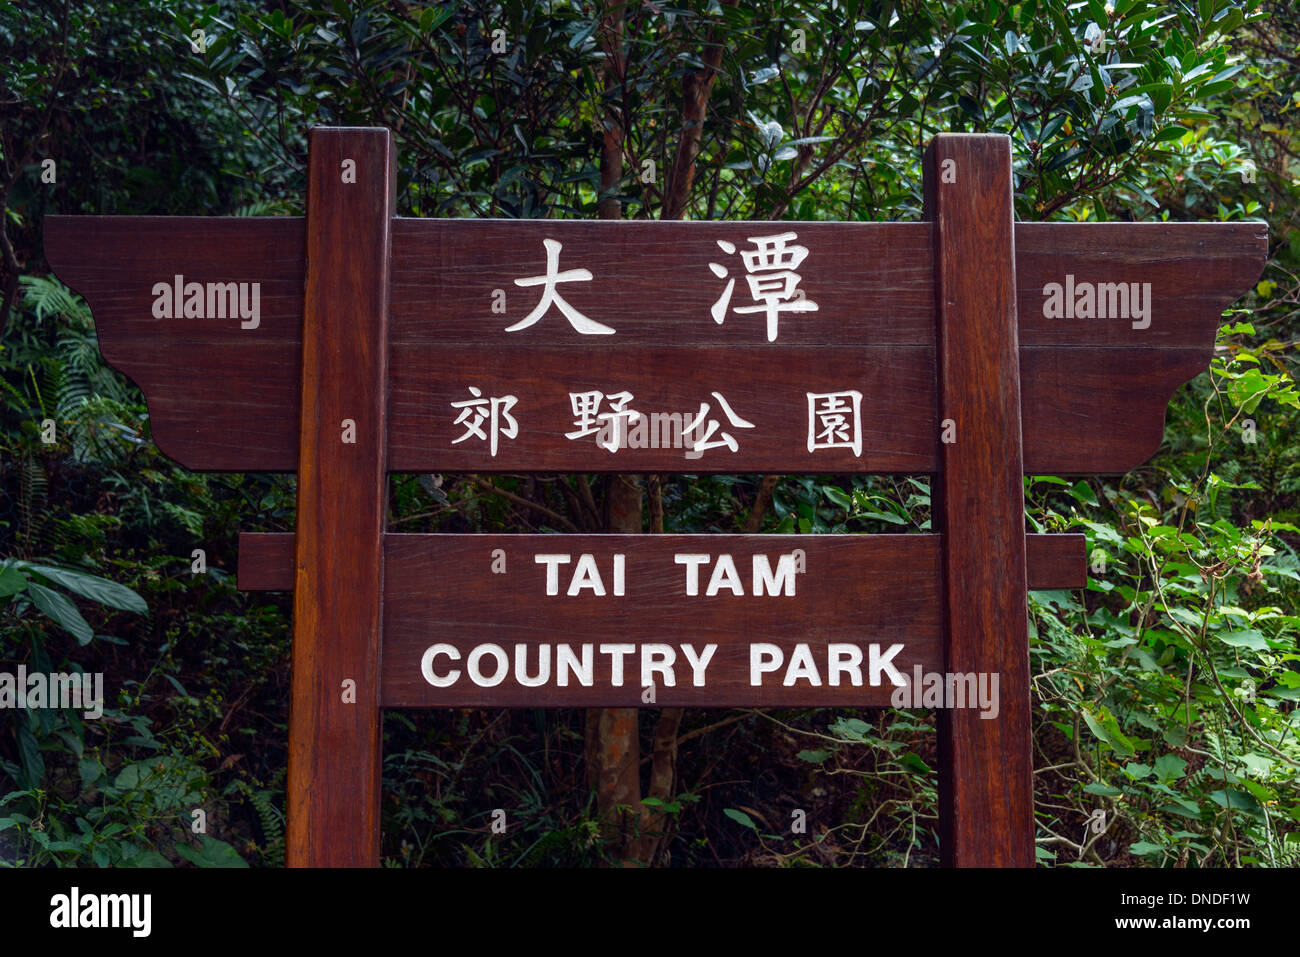 Tai Tam Country Park Sign, Hong Kong Stock Photo